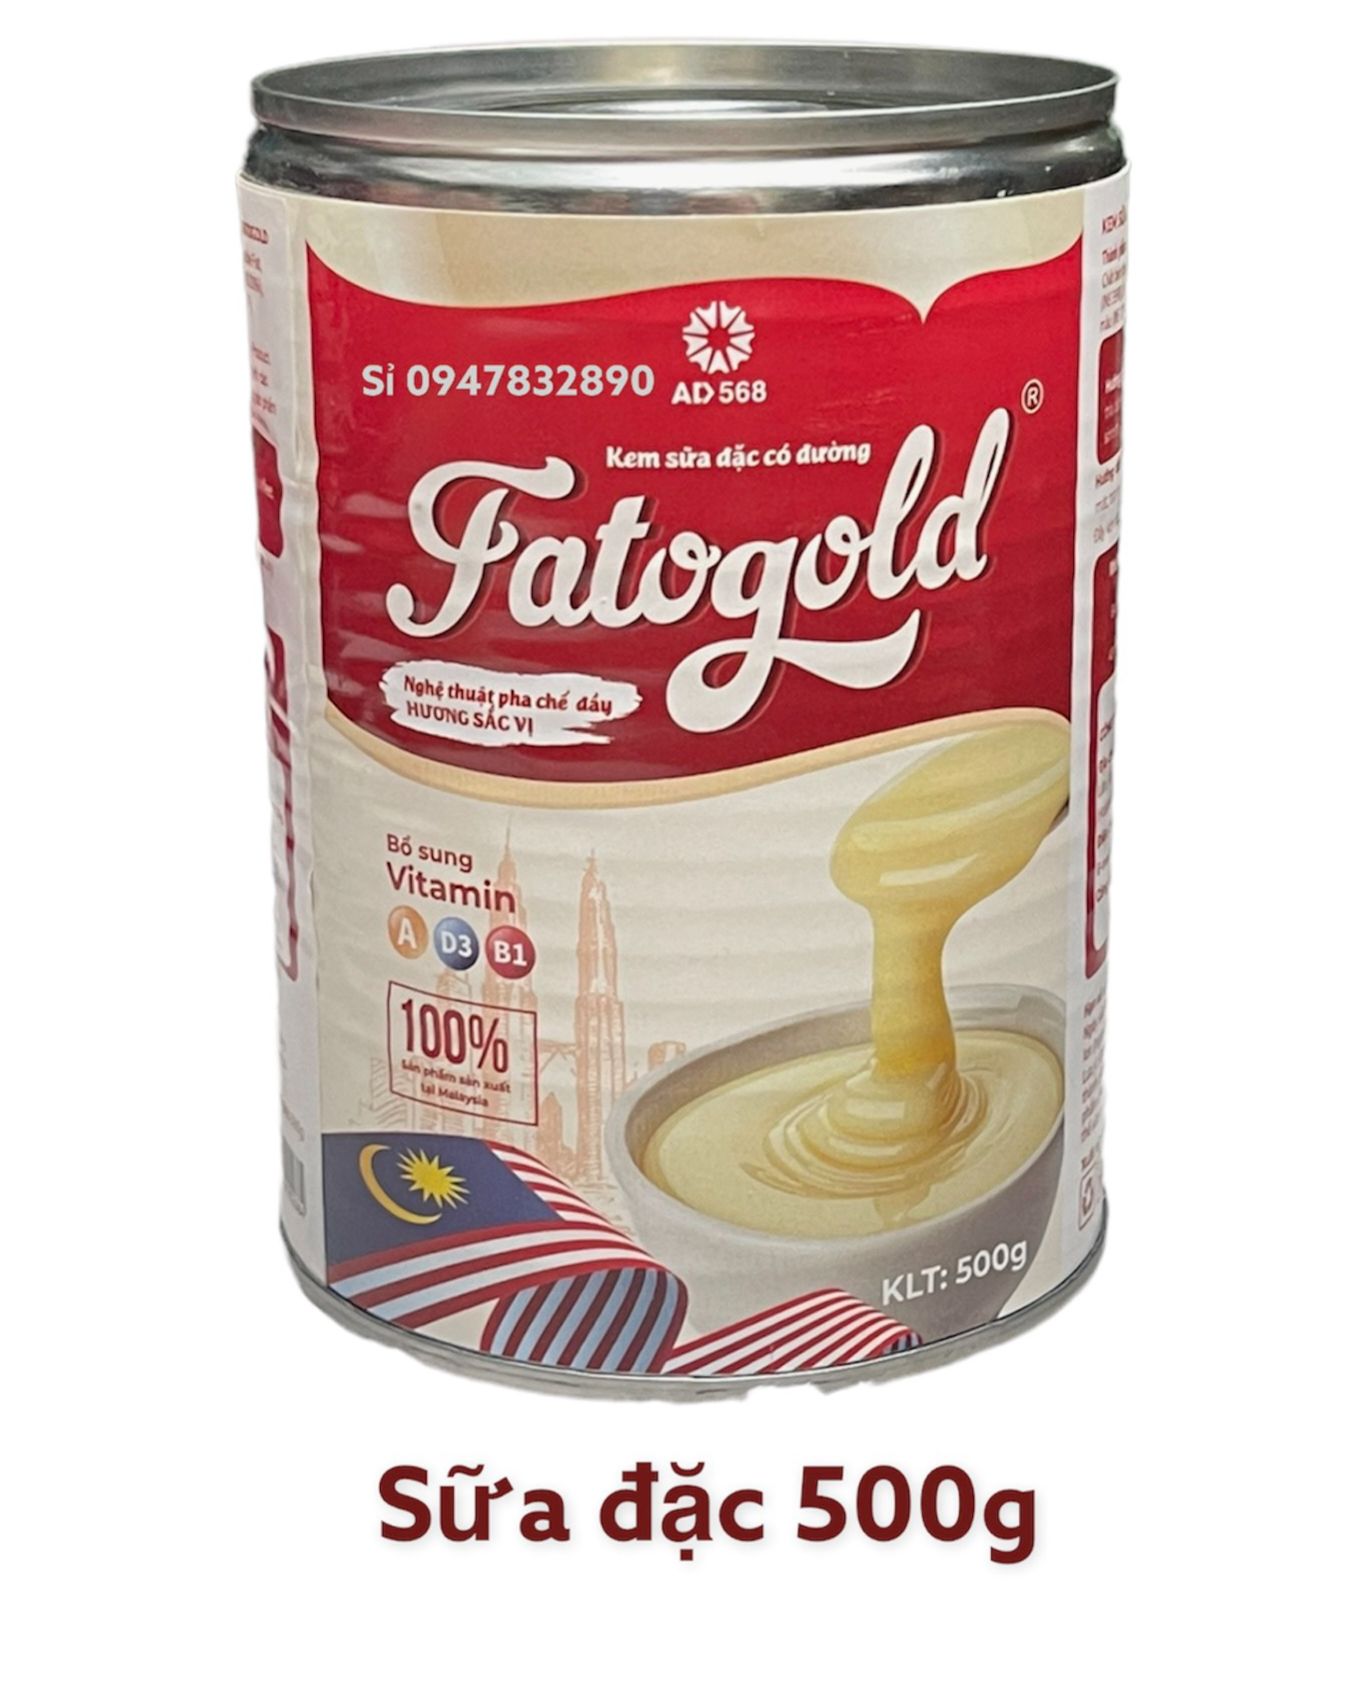 Sữa đặc có đường nắp giật - Kem sữa đặc 500g fato gold